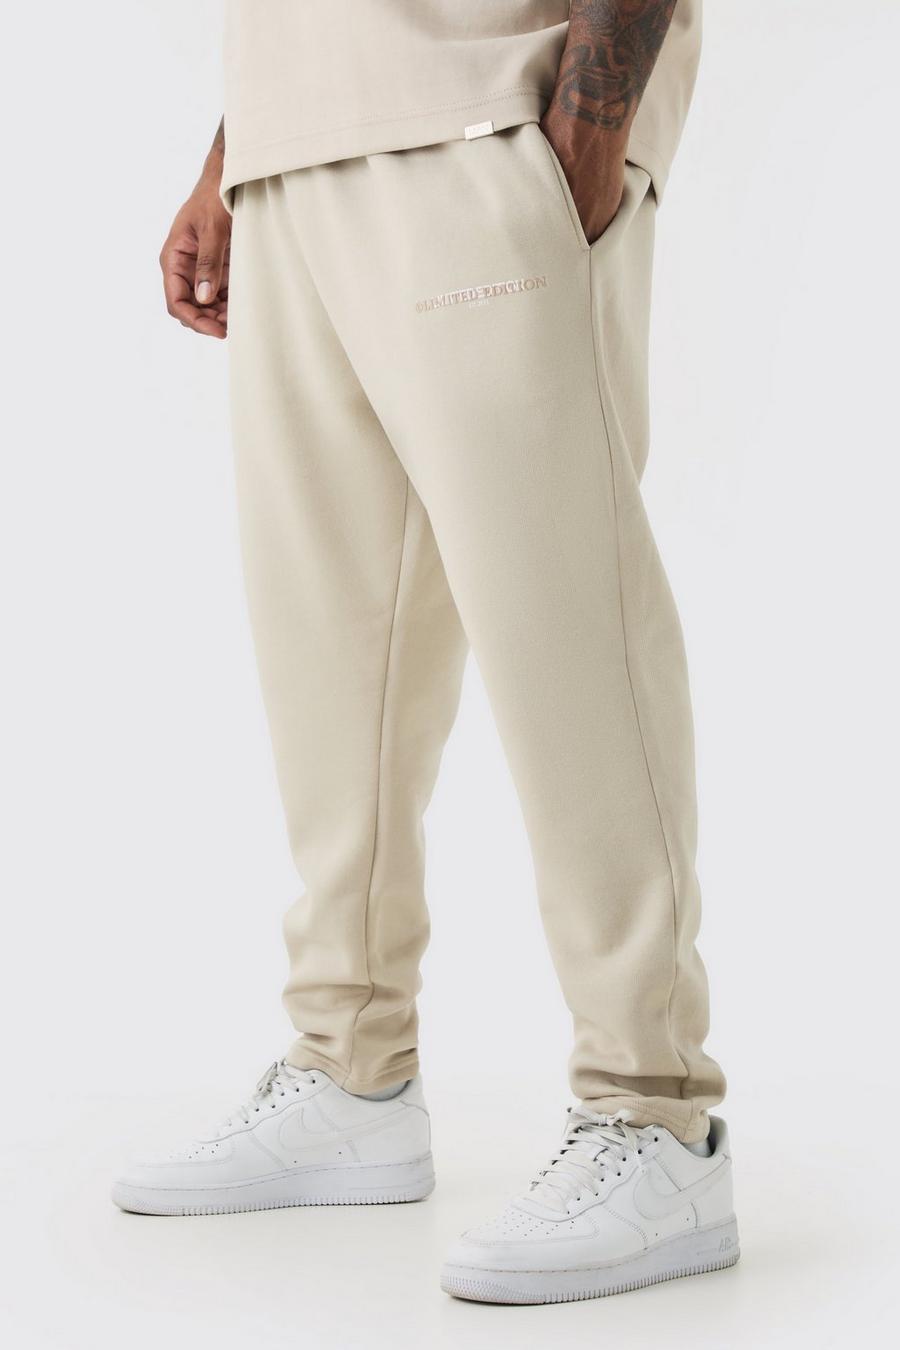 Pantalón deportivo Plus básico ajustado Limited, Stone